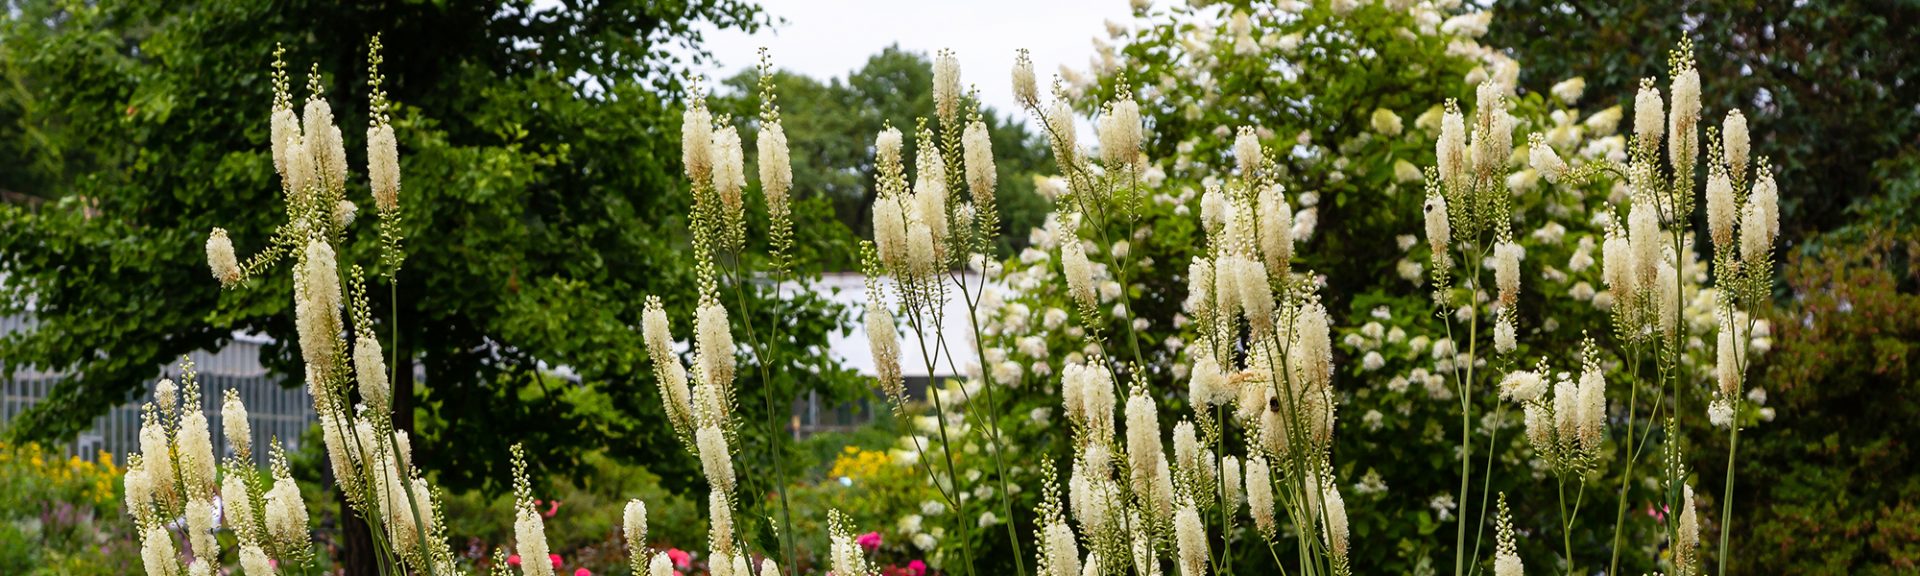 Actaea heracleifolia Actée à épis floraison blanche